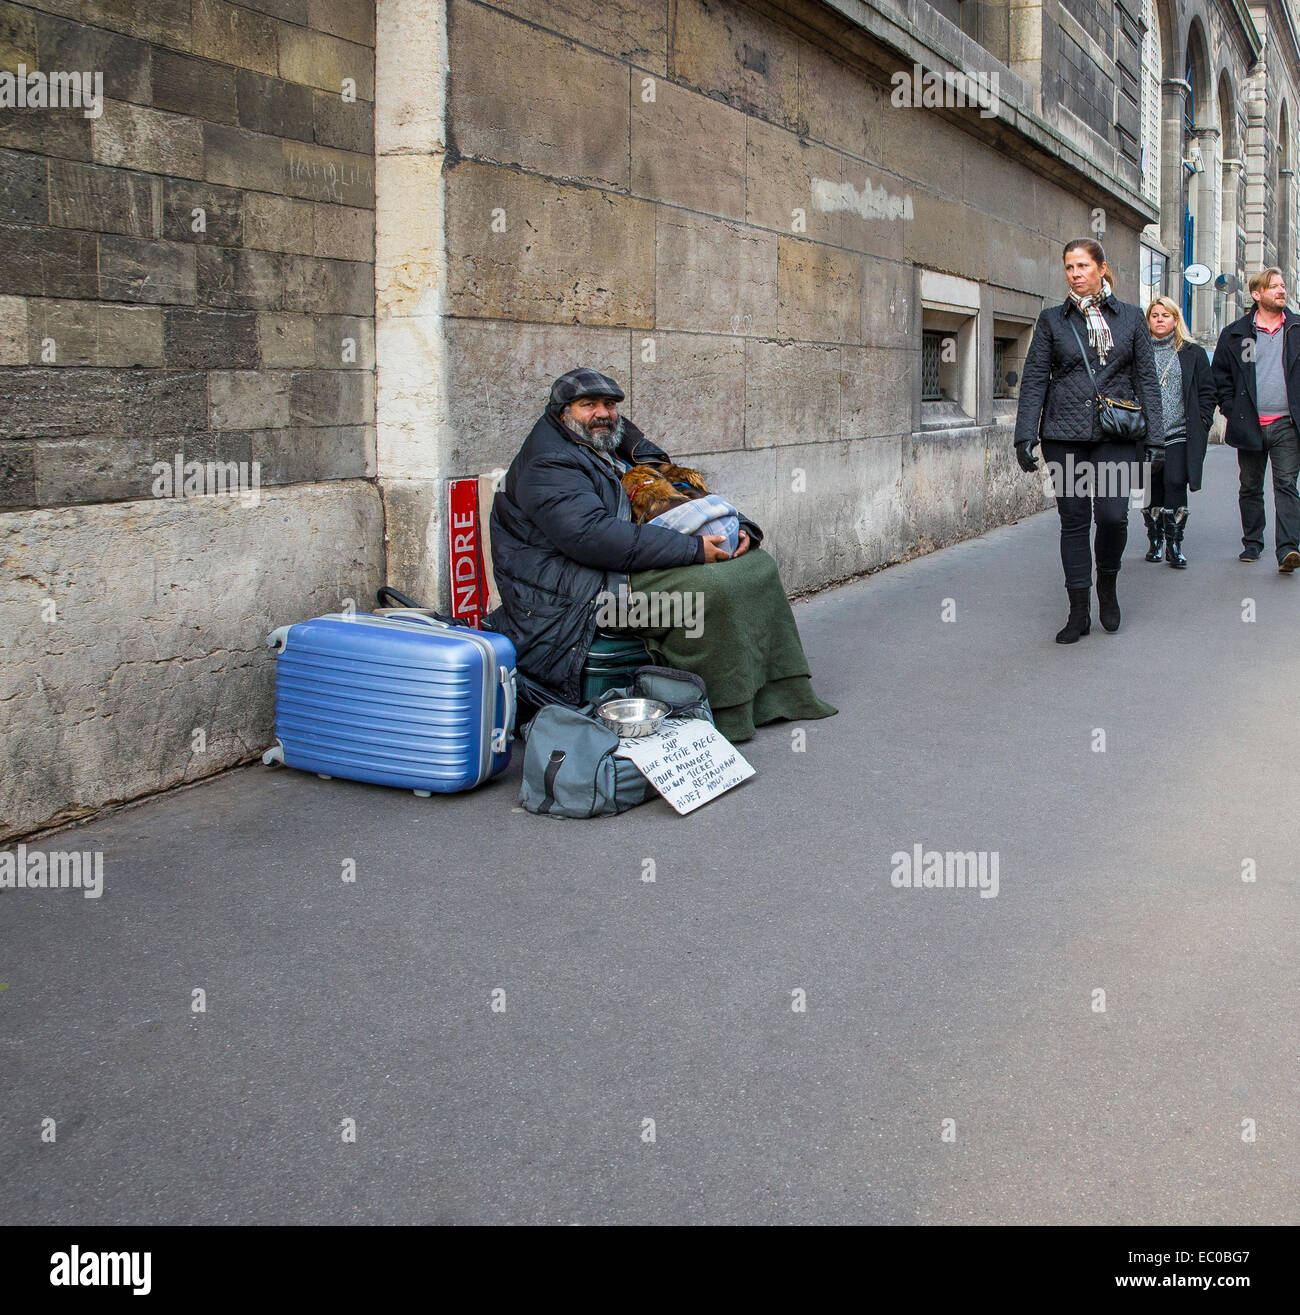 Sans-abri mendiant mendiant rue passants Banque D'Images